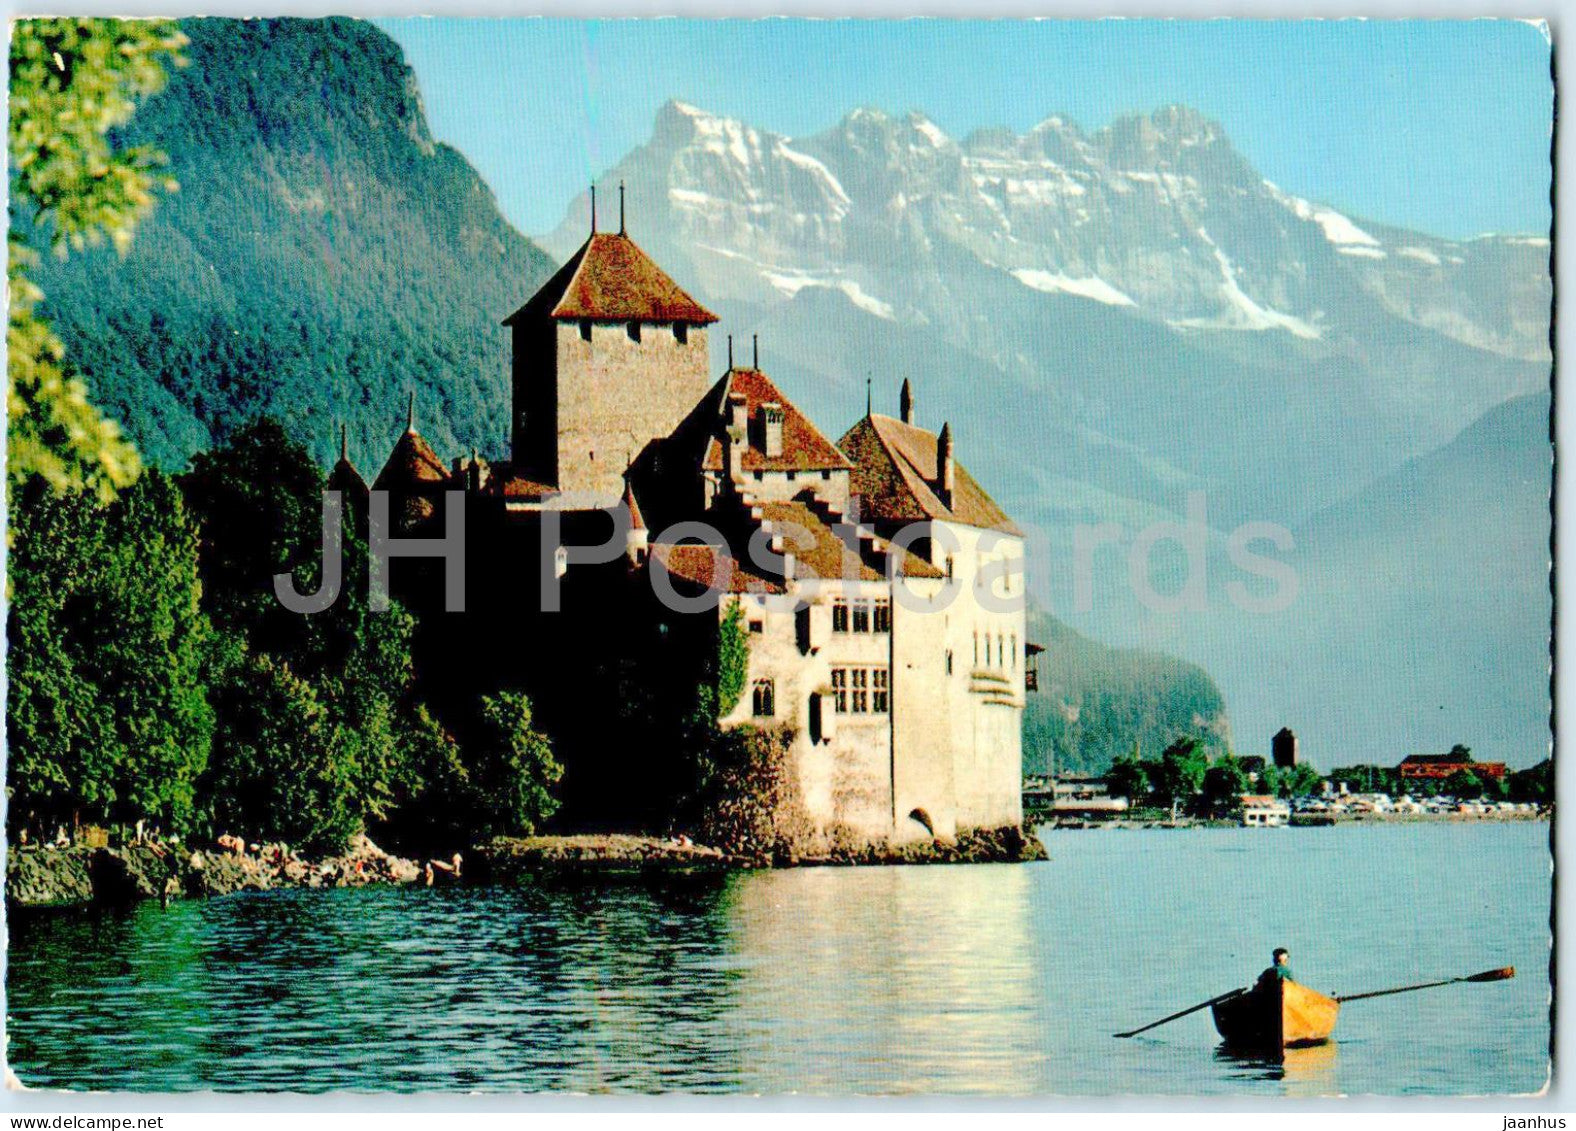 Lac Leman - Le Chateau de Chillon et les Dents du Midi - castle - 1966 - Switzerland - used - JH Postcards